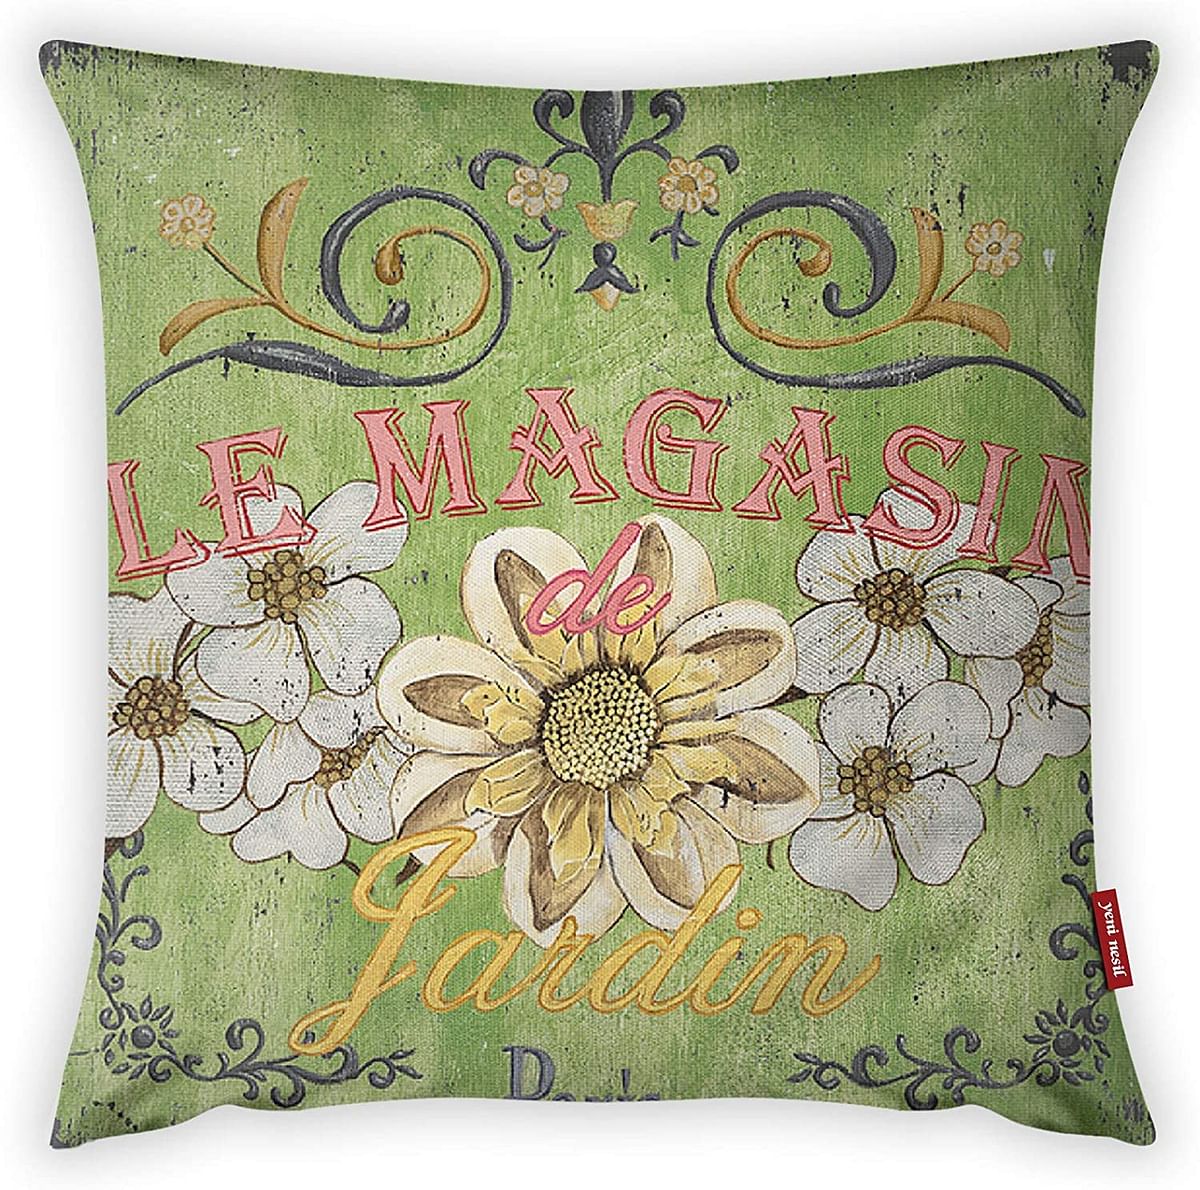 Mon Desire Decorative Throw Pillow Cover, Multi-Colour, 44 x 44 cm, MDSYST3178